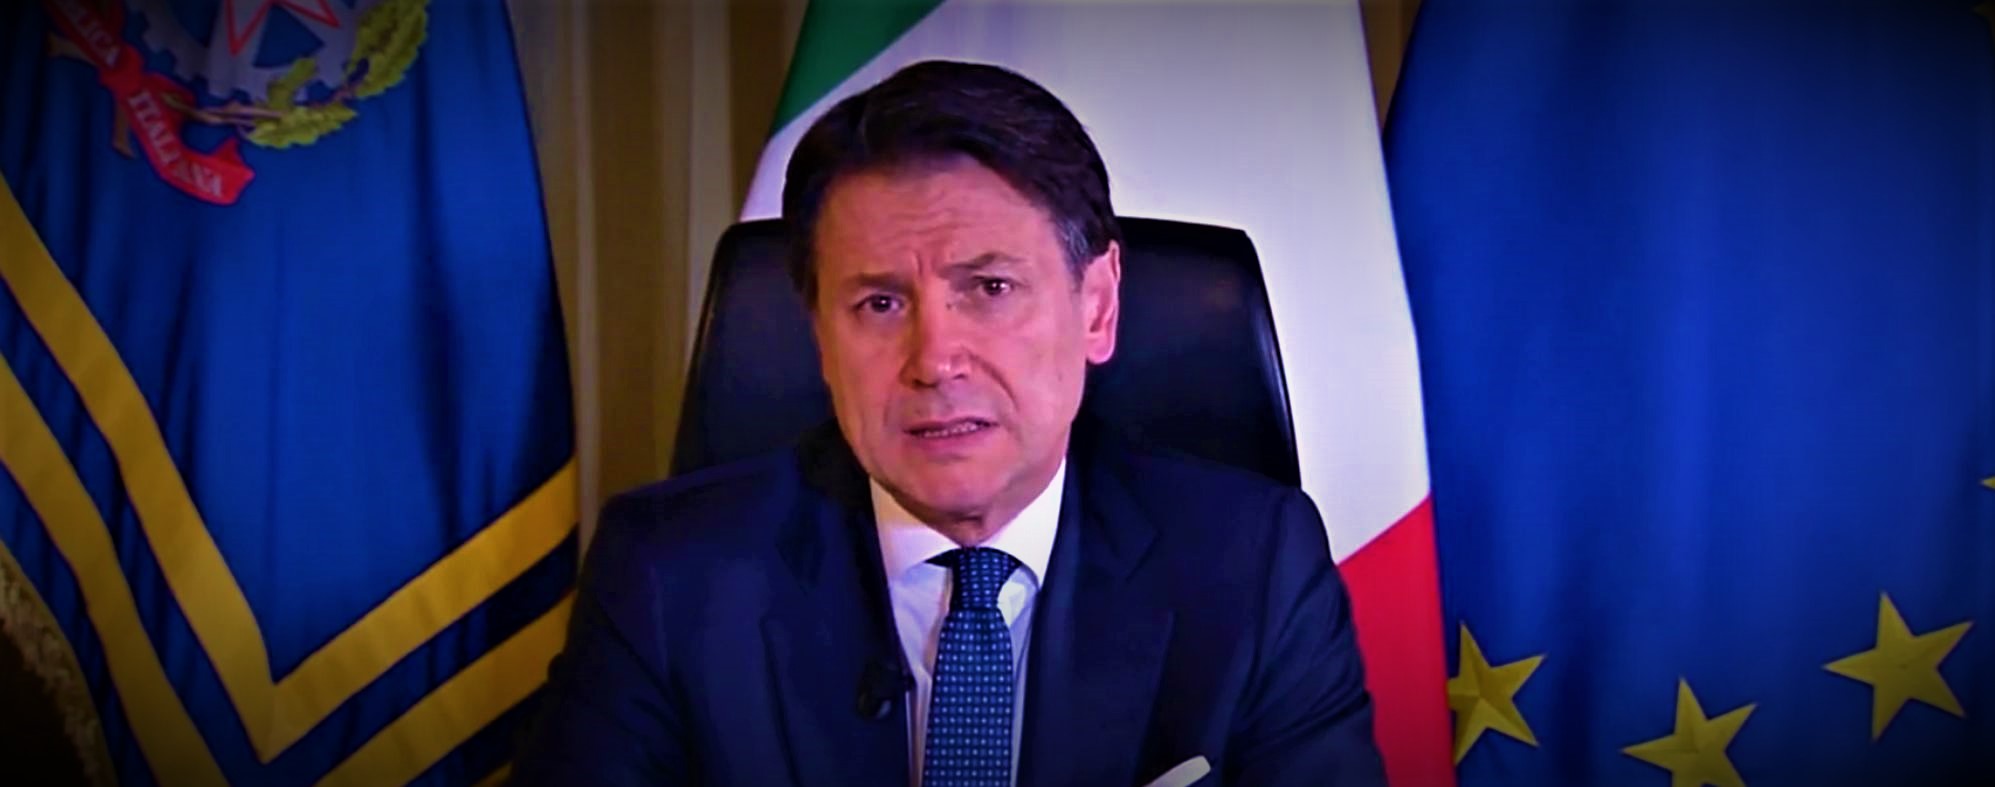 Οικονομική κατάρρευση Ιταλίας: 750 δισ. ευρώ δανεικά για να στηριχθεί ότι μπορεί…